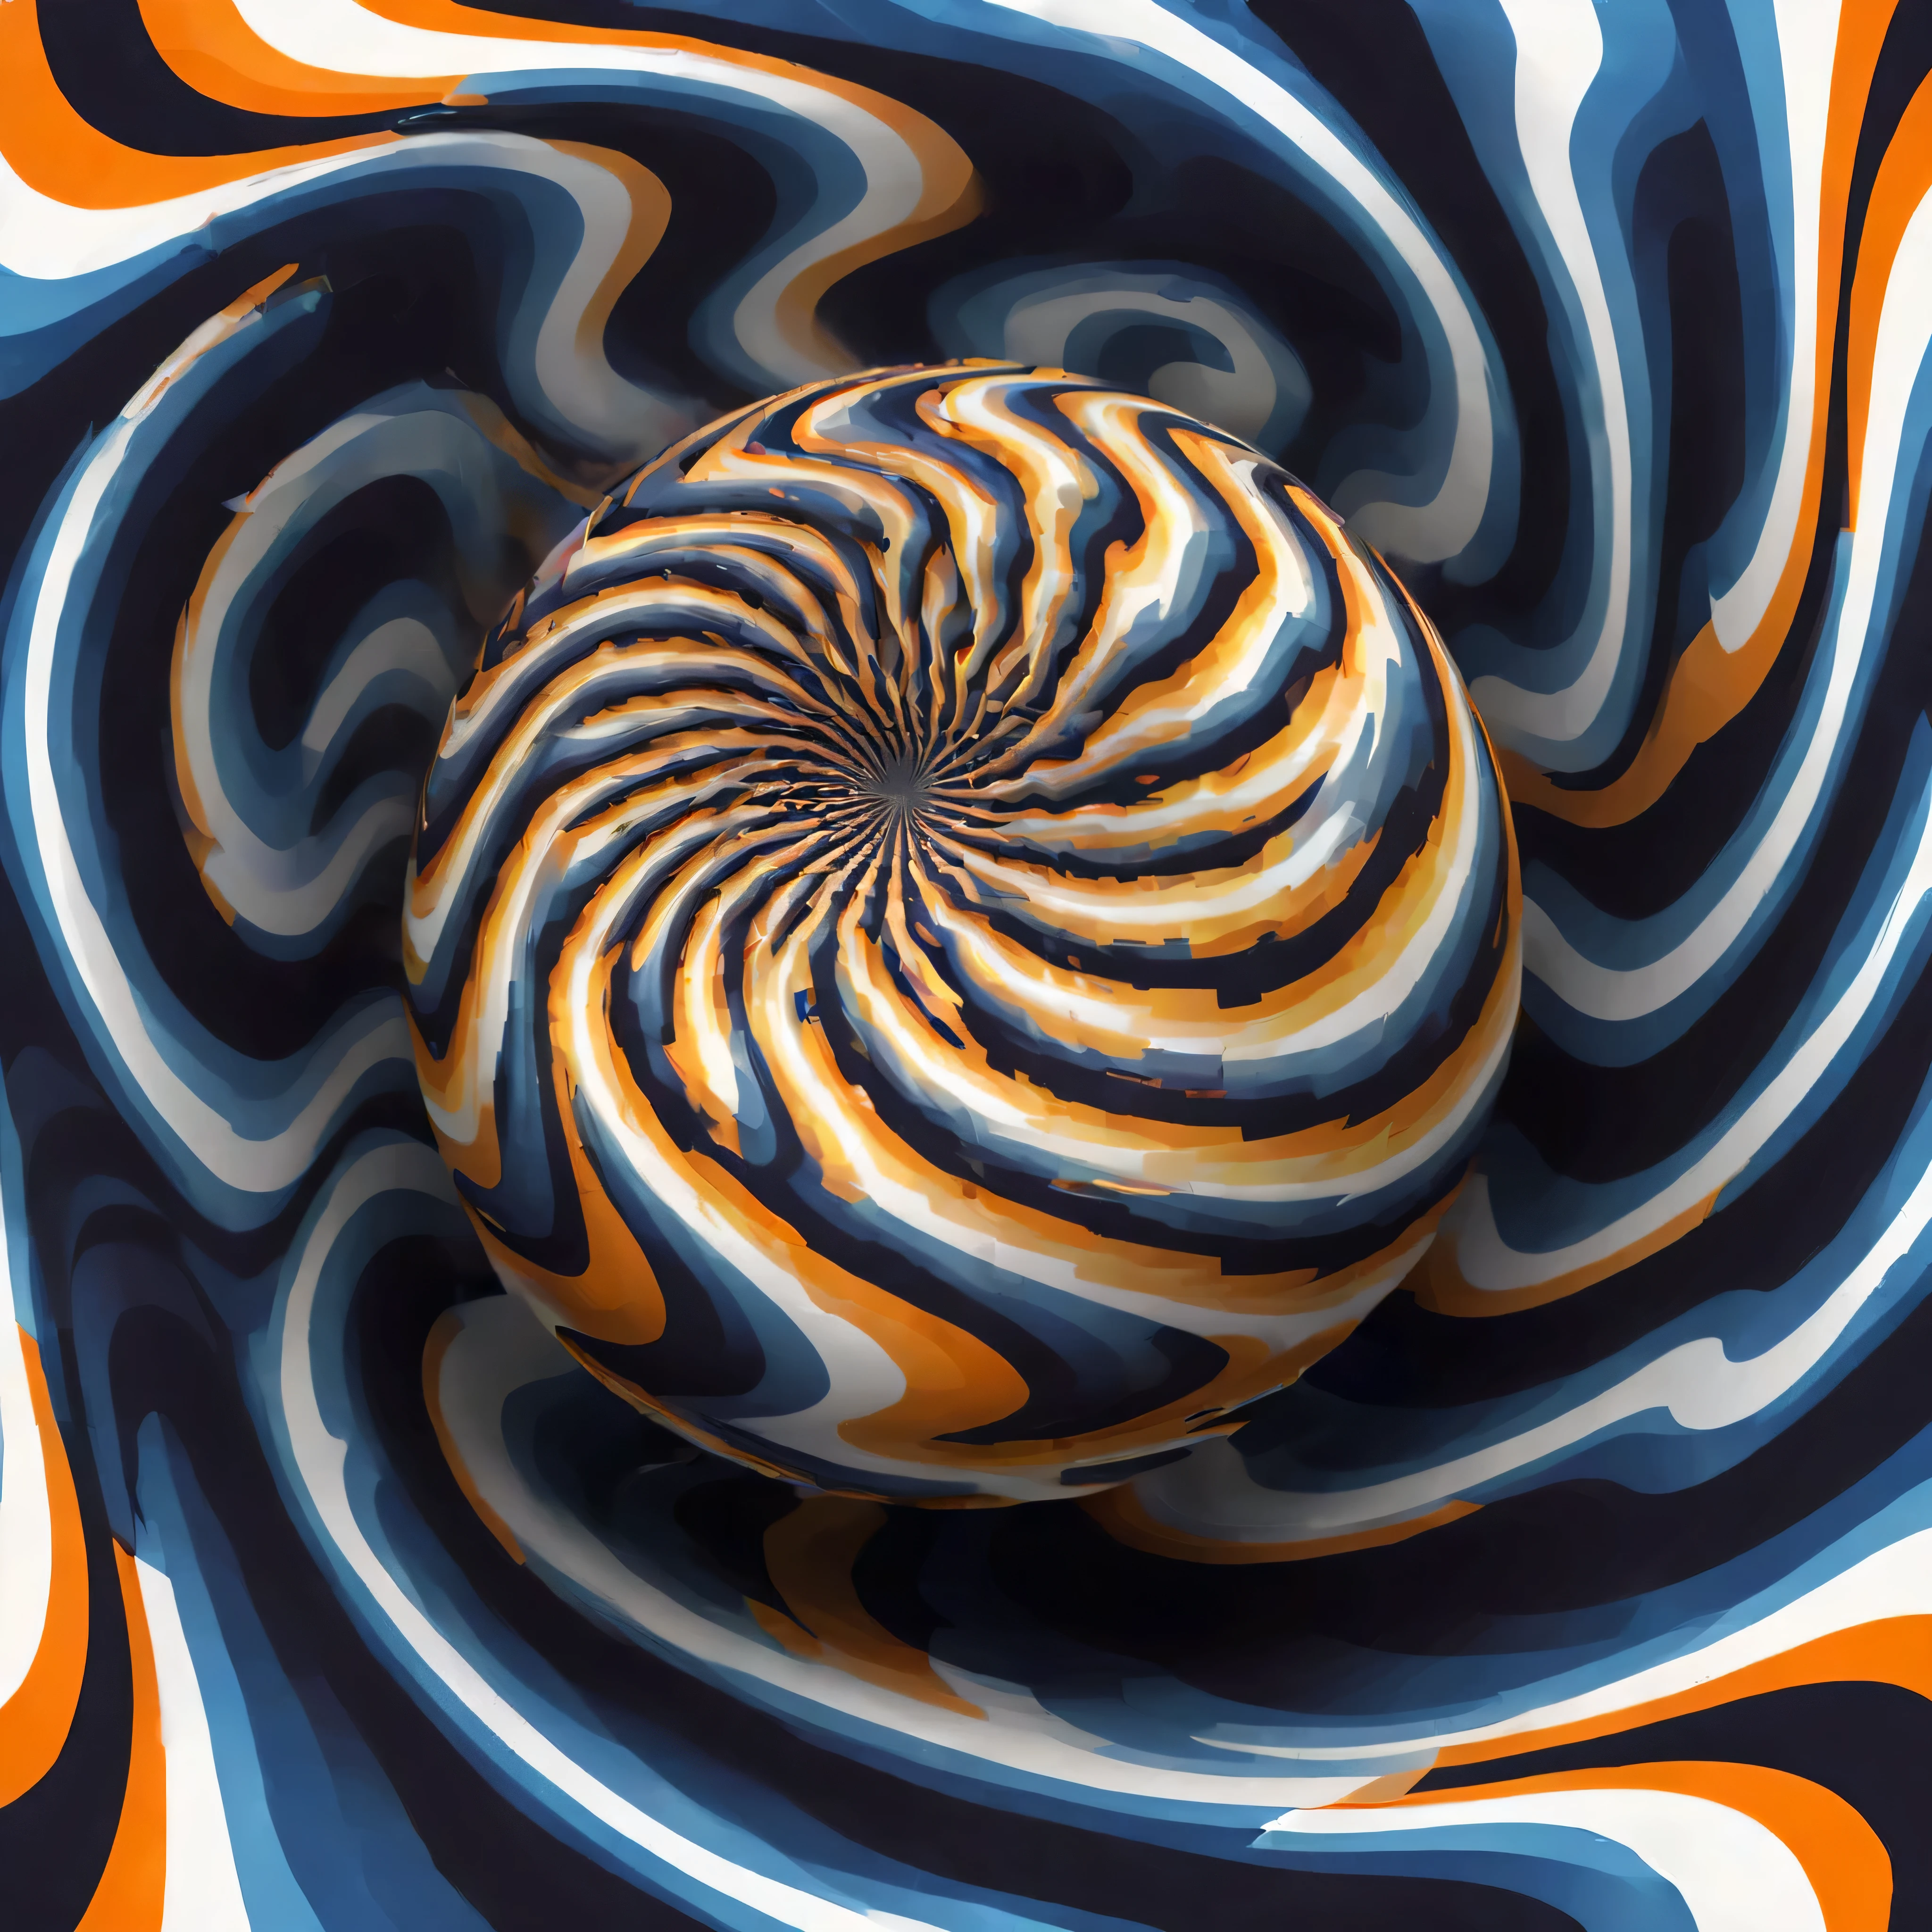 光学illusion，Optical illusion， Ottie, illusion, move, spinning, spiral, ball, eddy, rotate